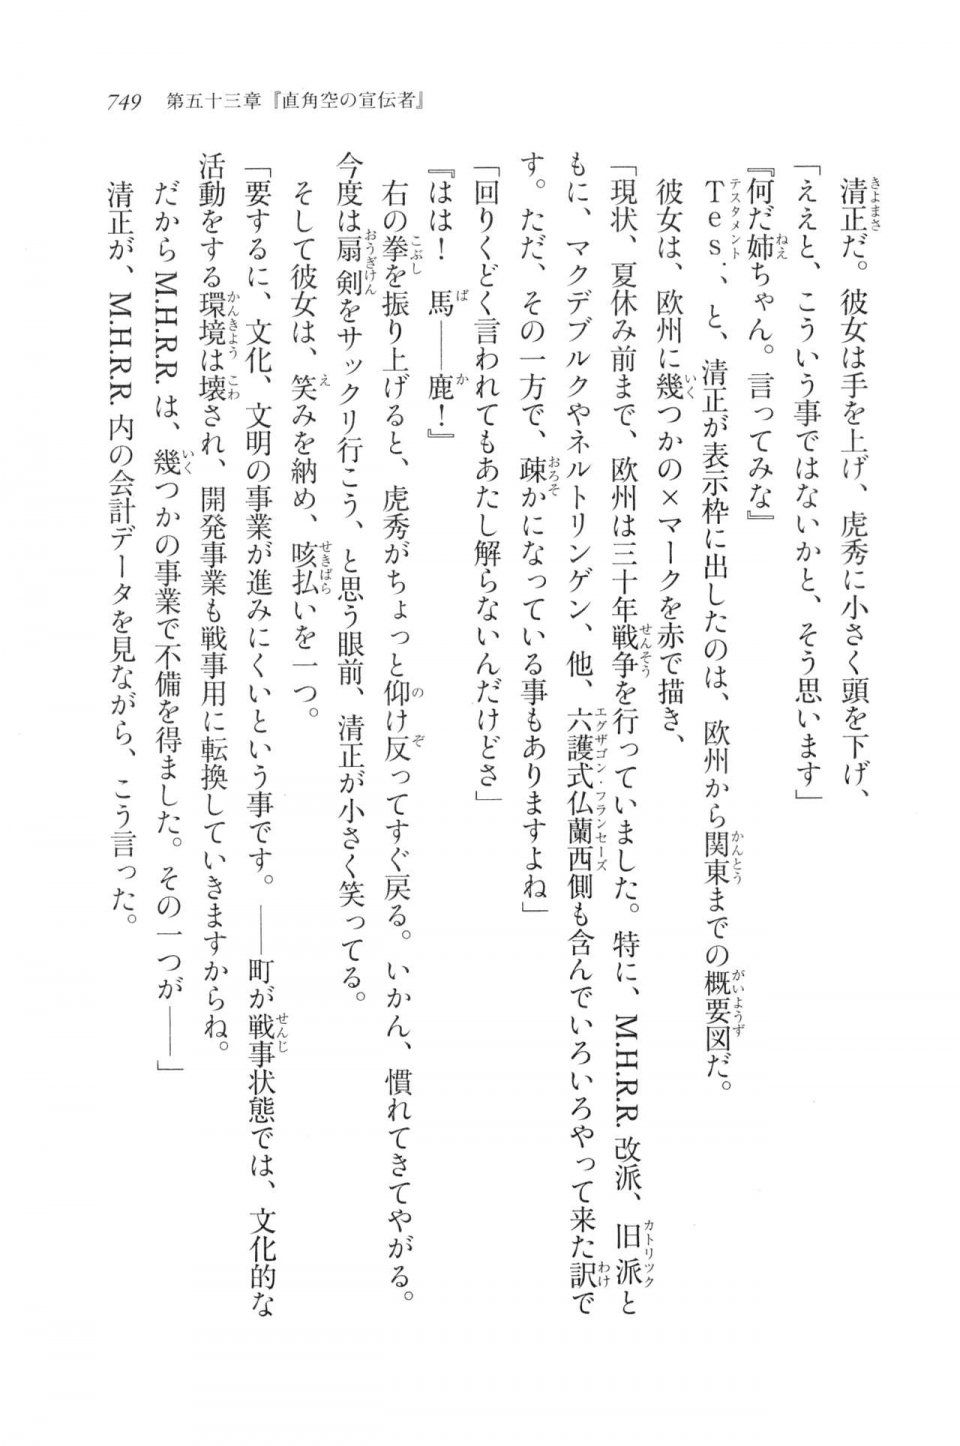 Kyoukai Senjou no Horizon LN Vol 20(8B) - Photo #749